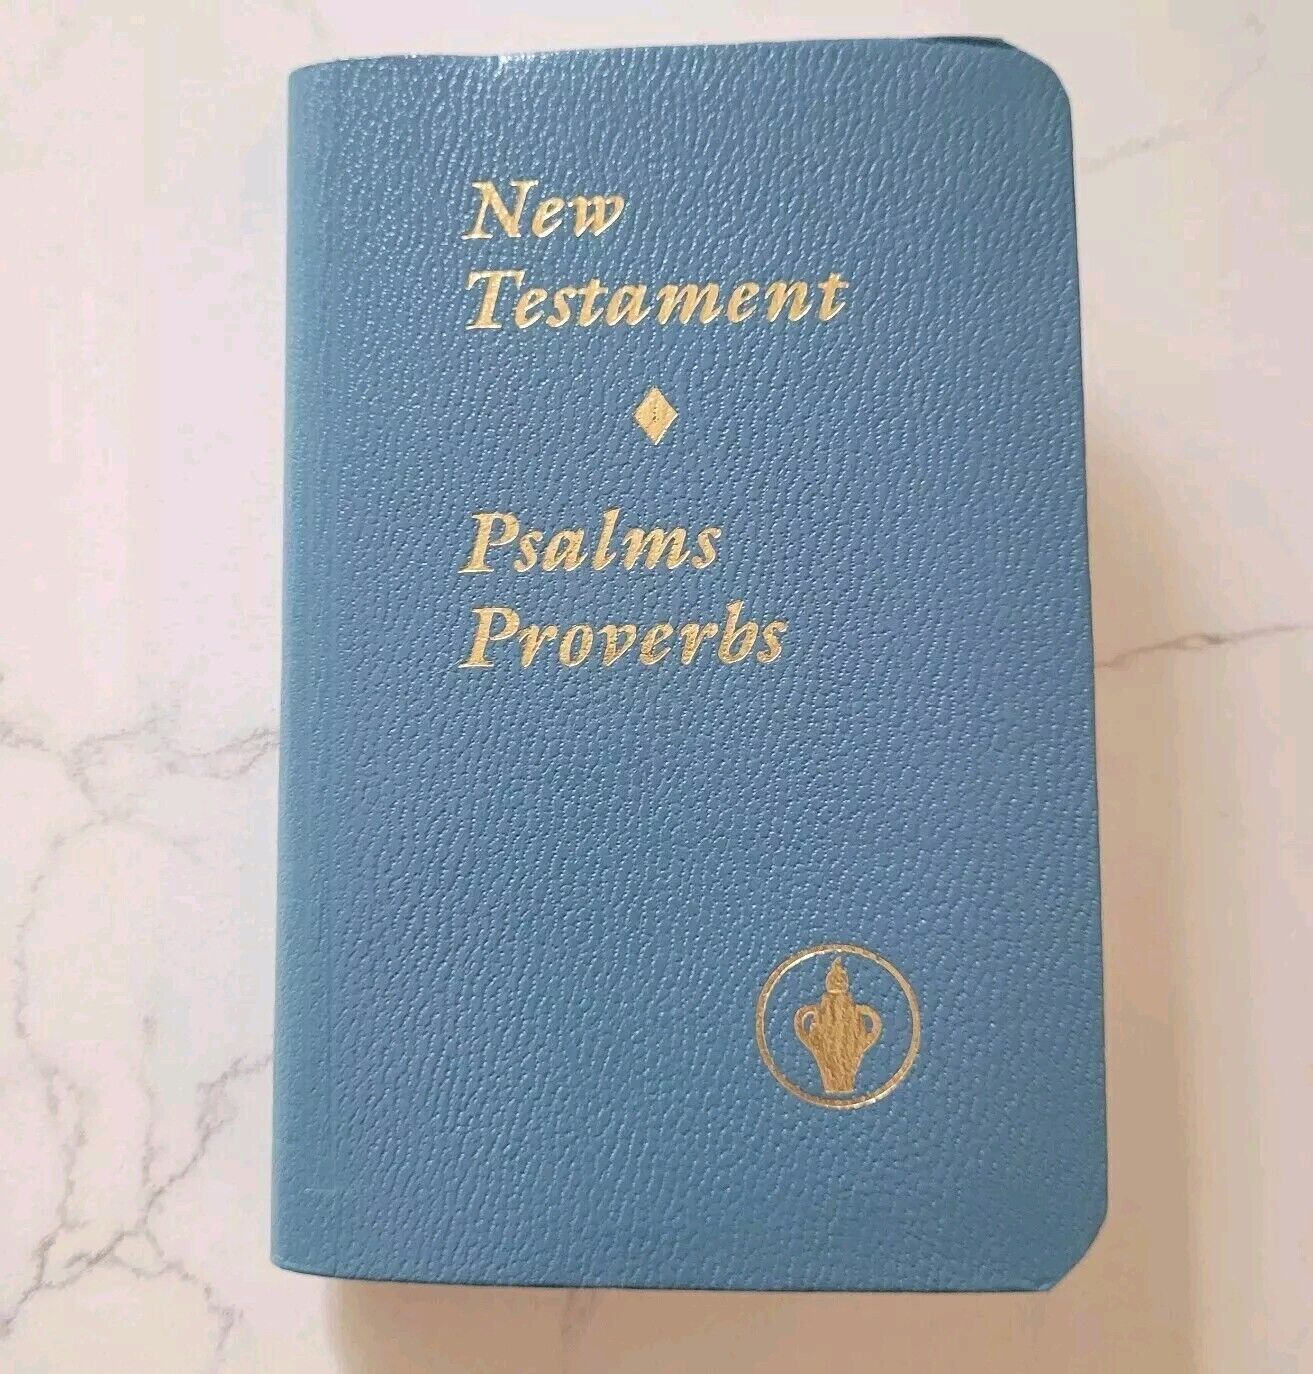 Pocket Bible Gideons International New Testament Psalms Proverbs Blue 1985